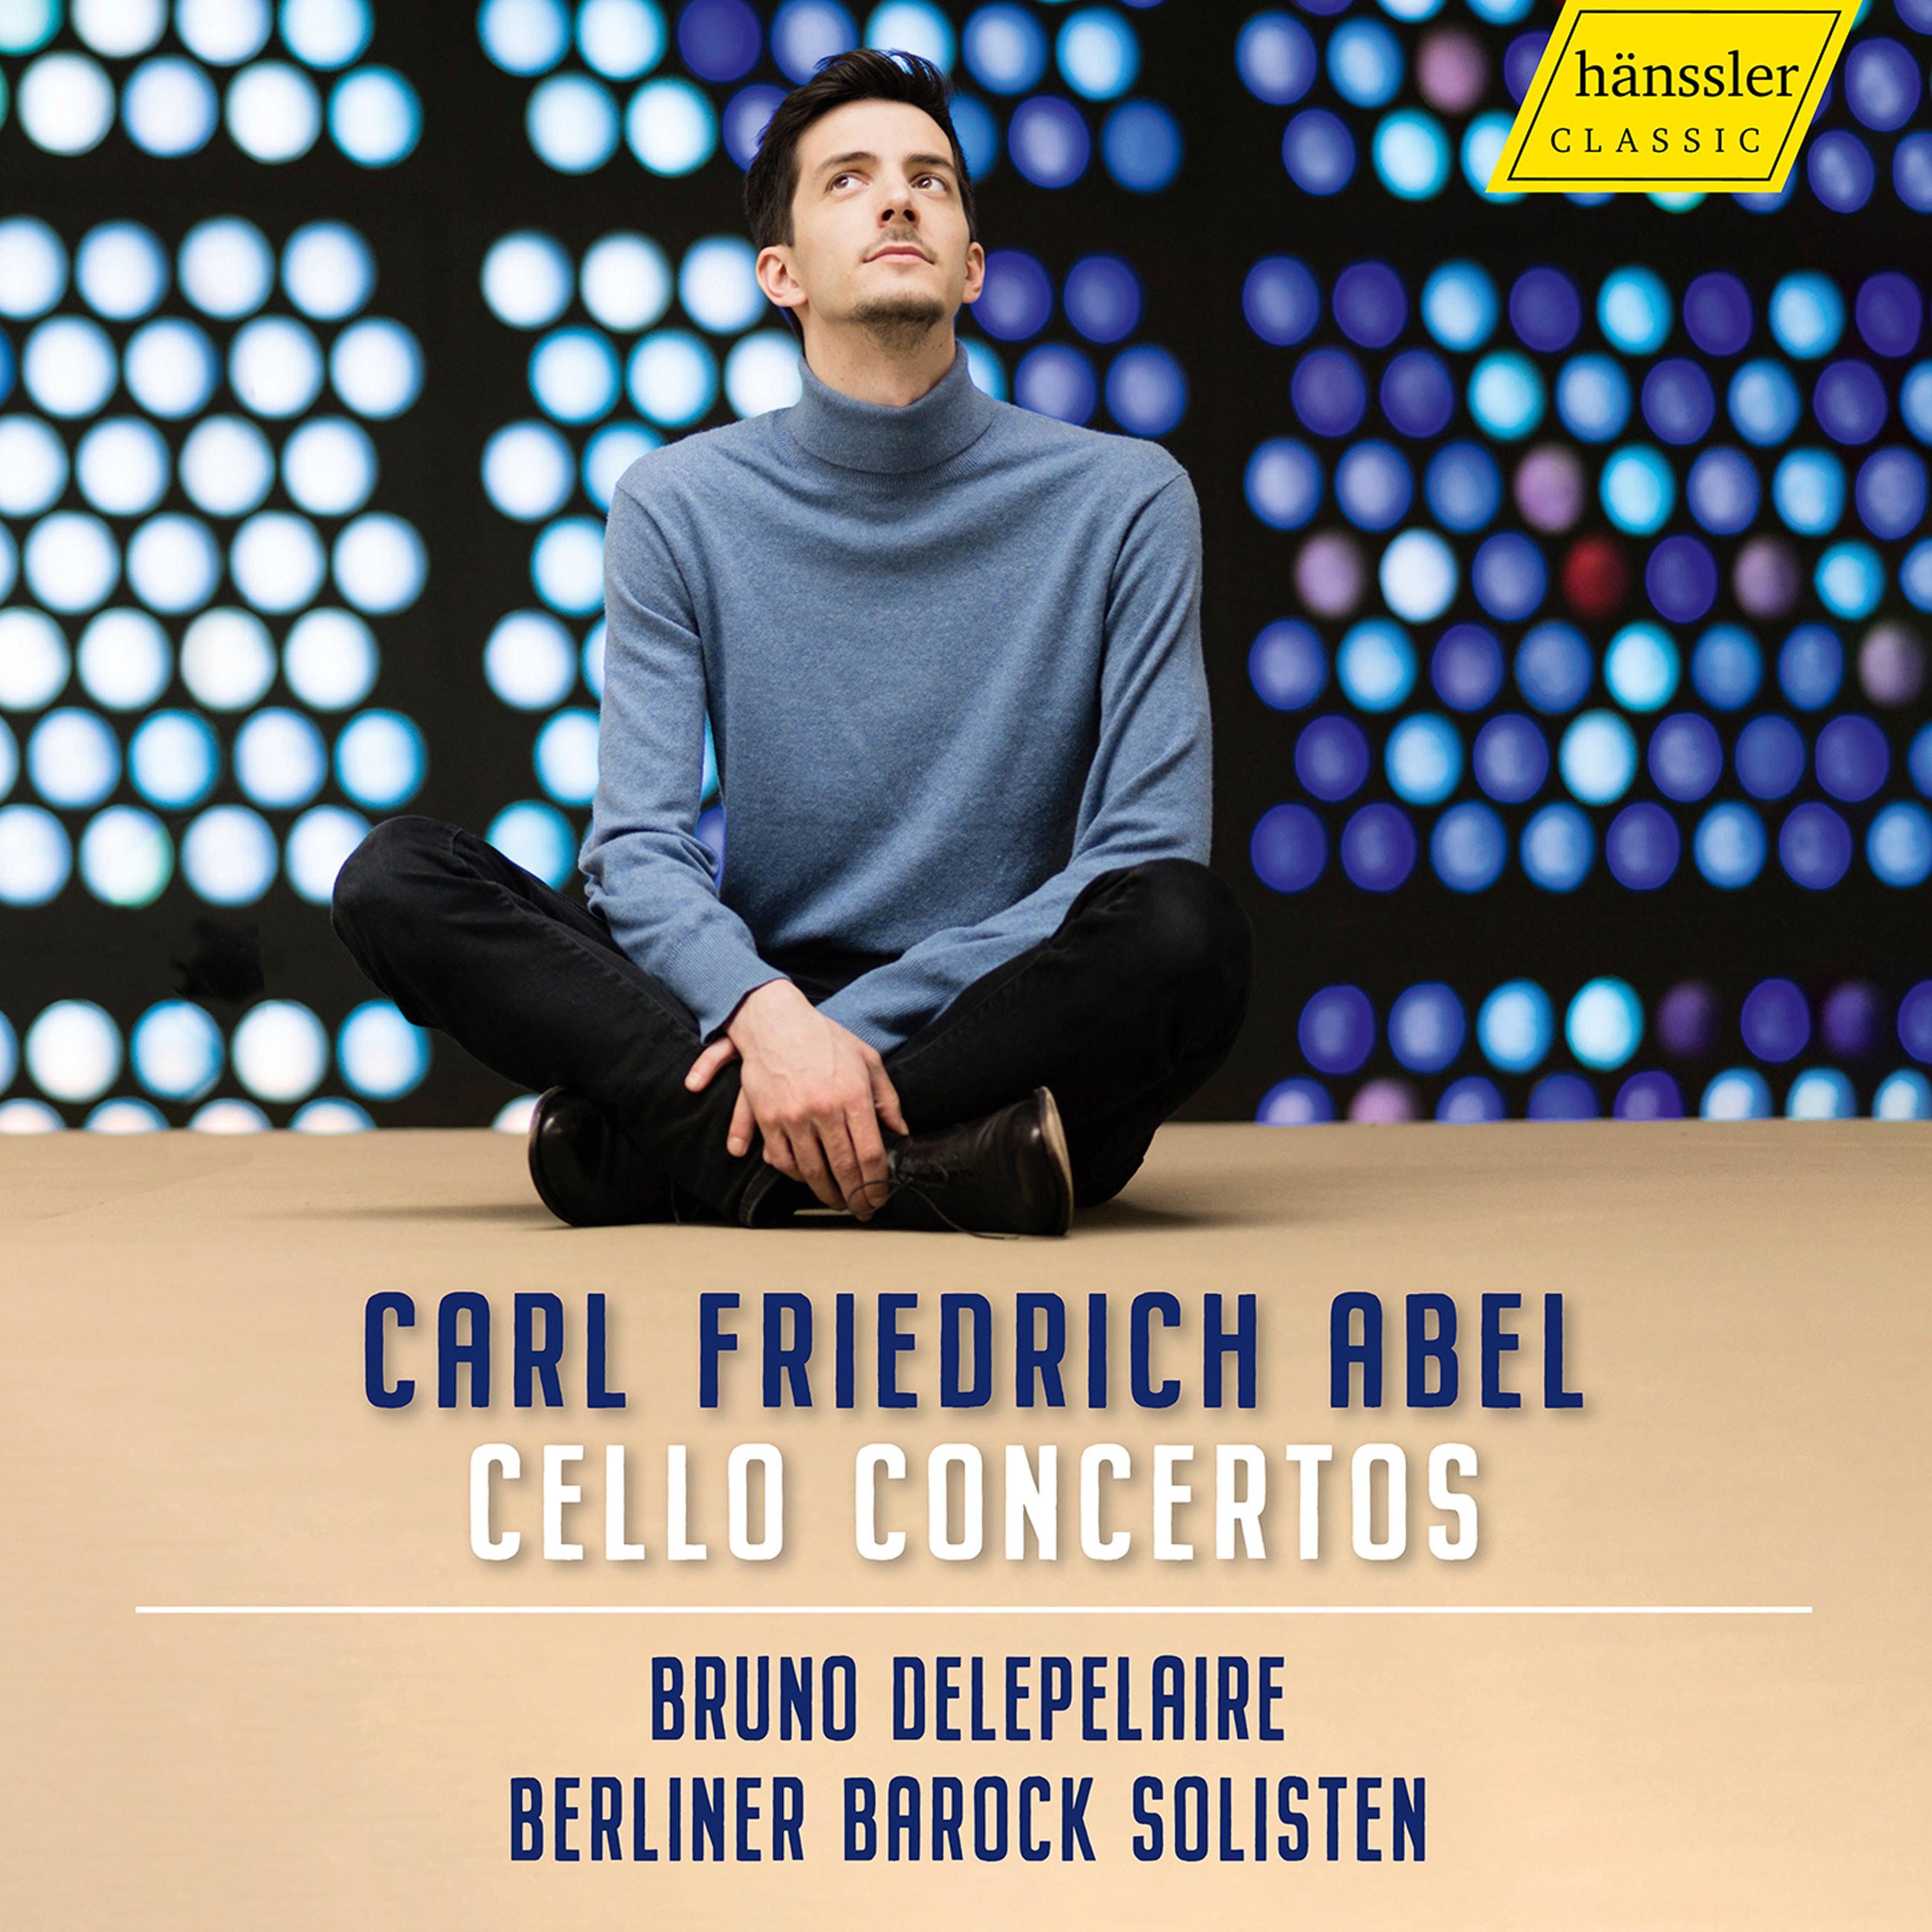 Bruno Delepelaire - Cello Concerto in C Major, WK 60:IIIb. Rondeau. Tempo di minuetto